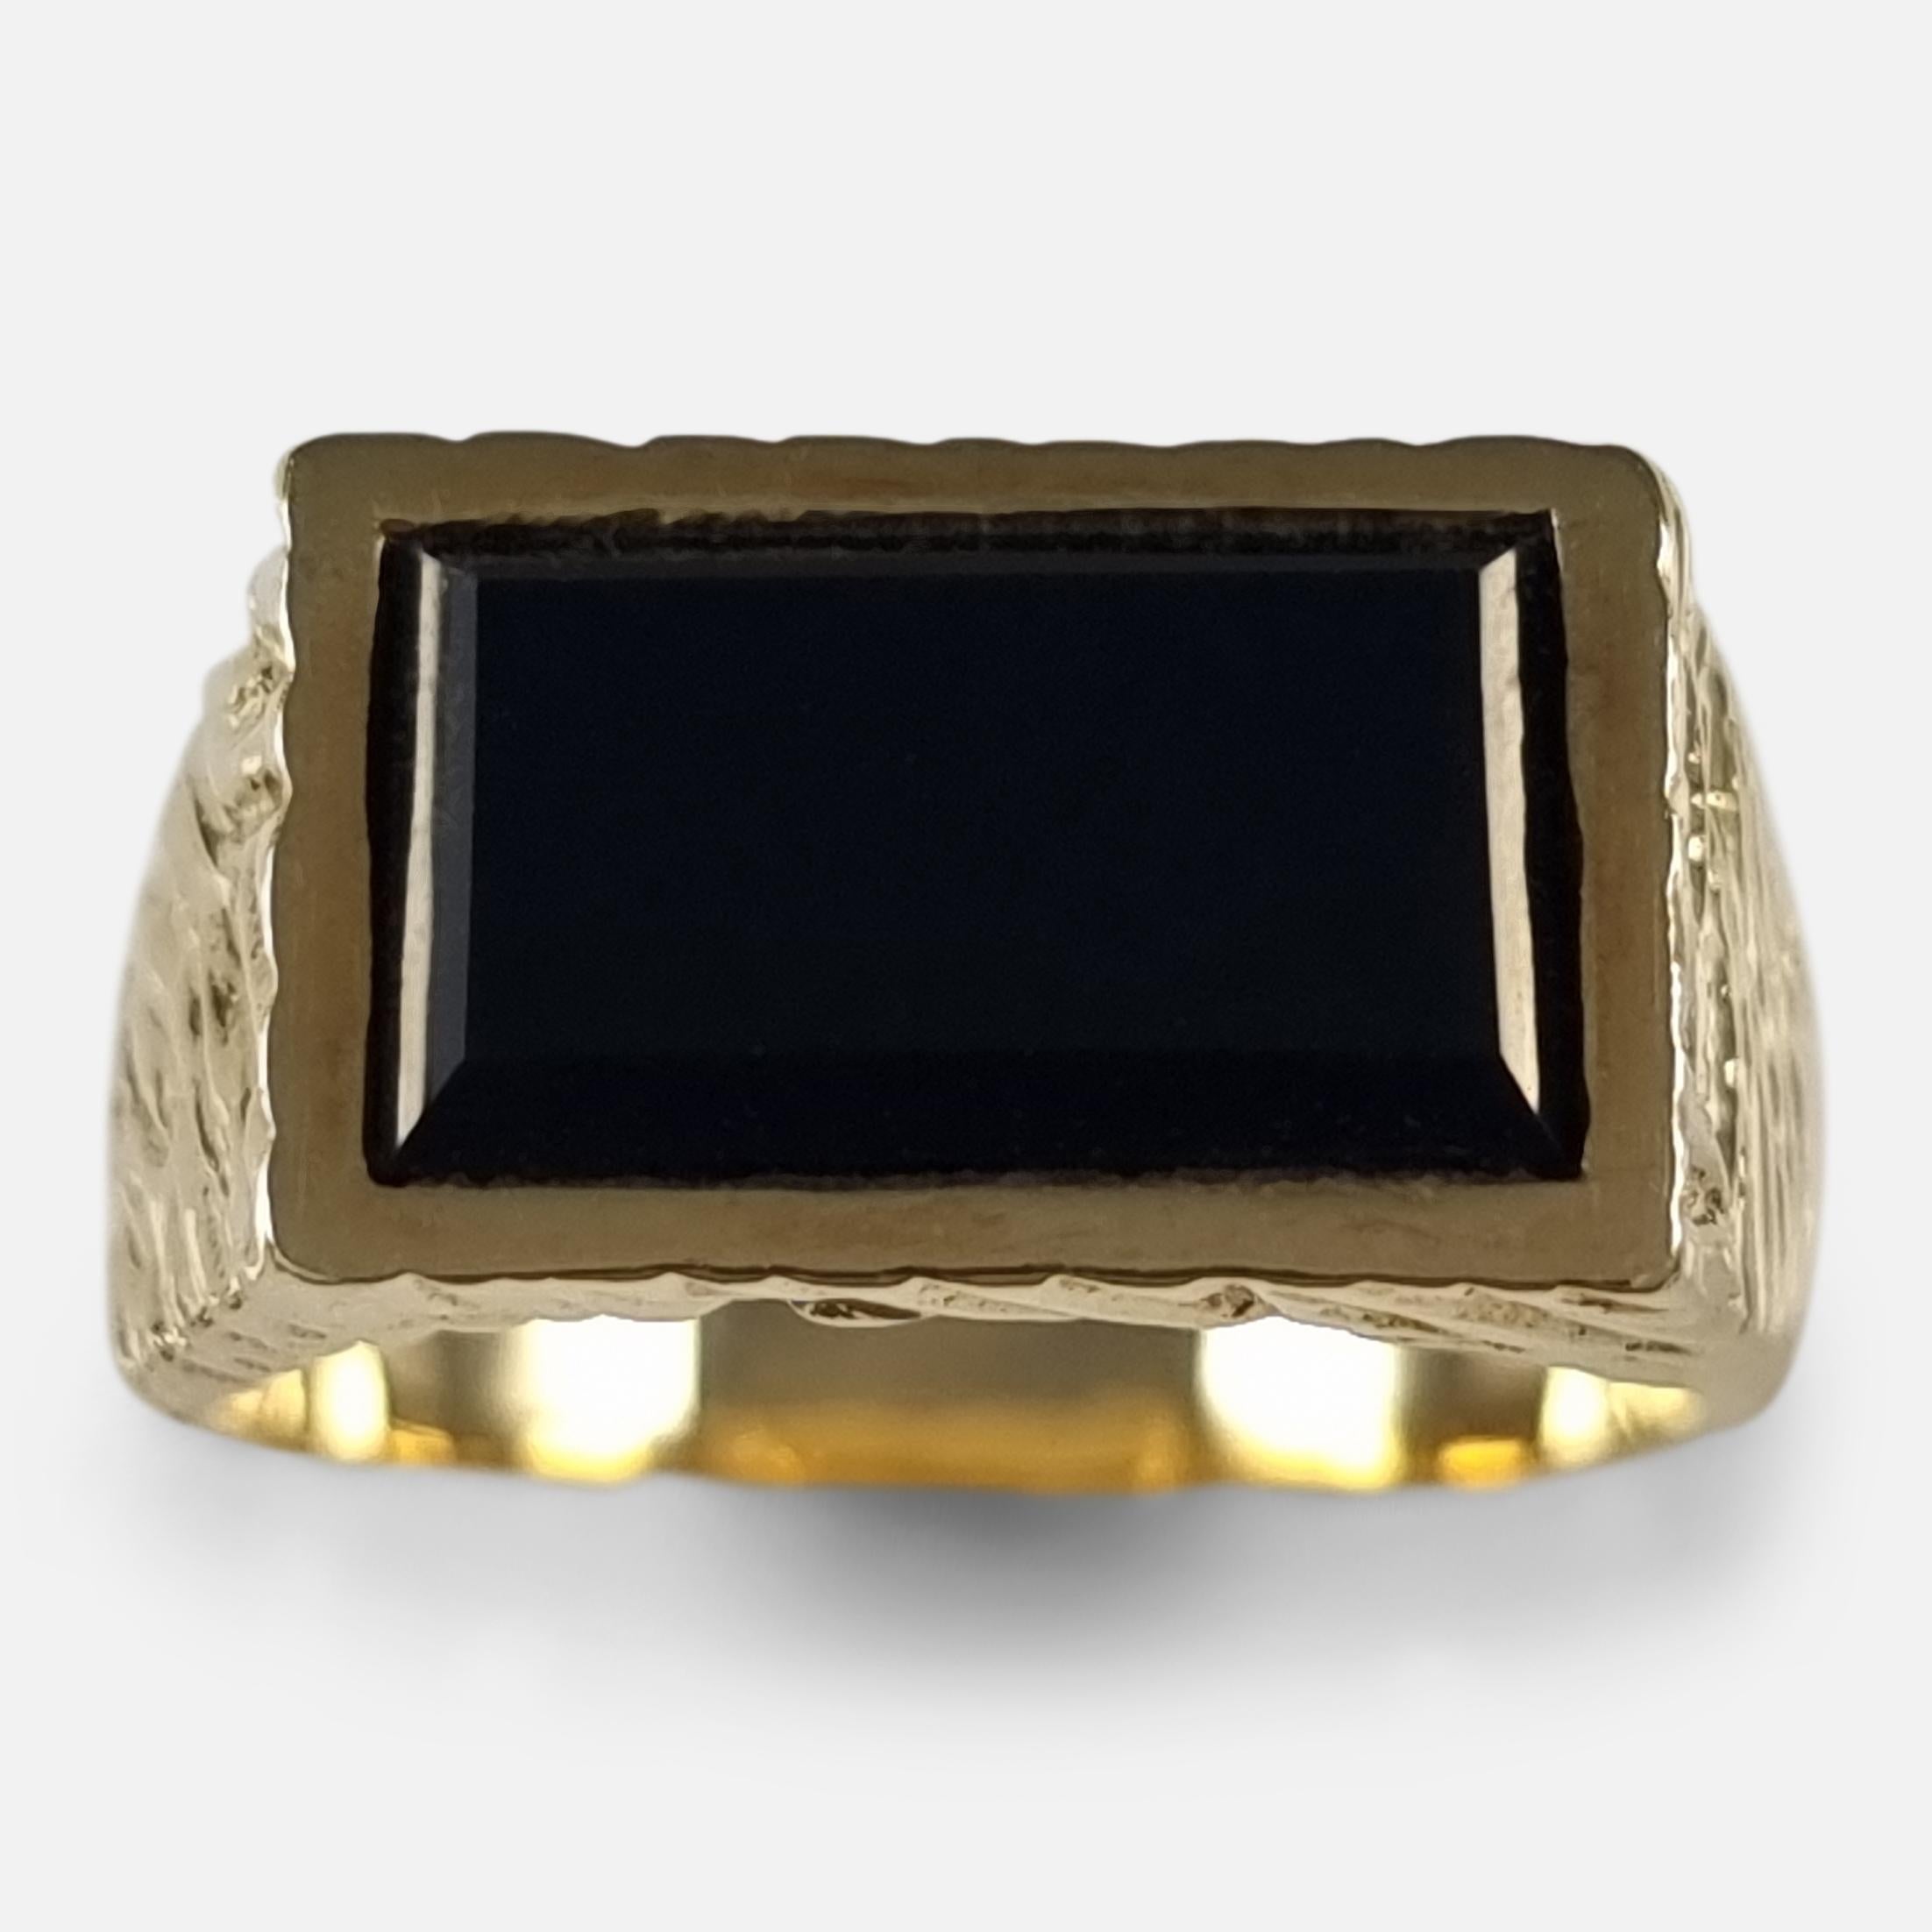 Ein Elizabeth II 18ct Gelbgold texturiert und rechteckig schwarzer Onyx Signet Stil Kleid Ring von Kutchinsky.

Die Original-Ringschachtel ist im Lieferumfang enthalten.

Bescheinigung: - .750 (18ct Gold).

Zeitraum: - Spätes 20.